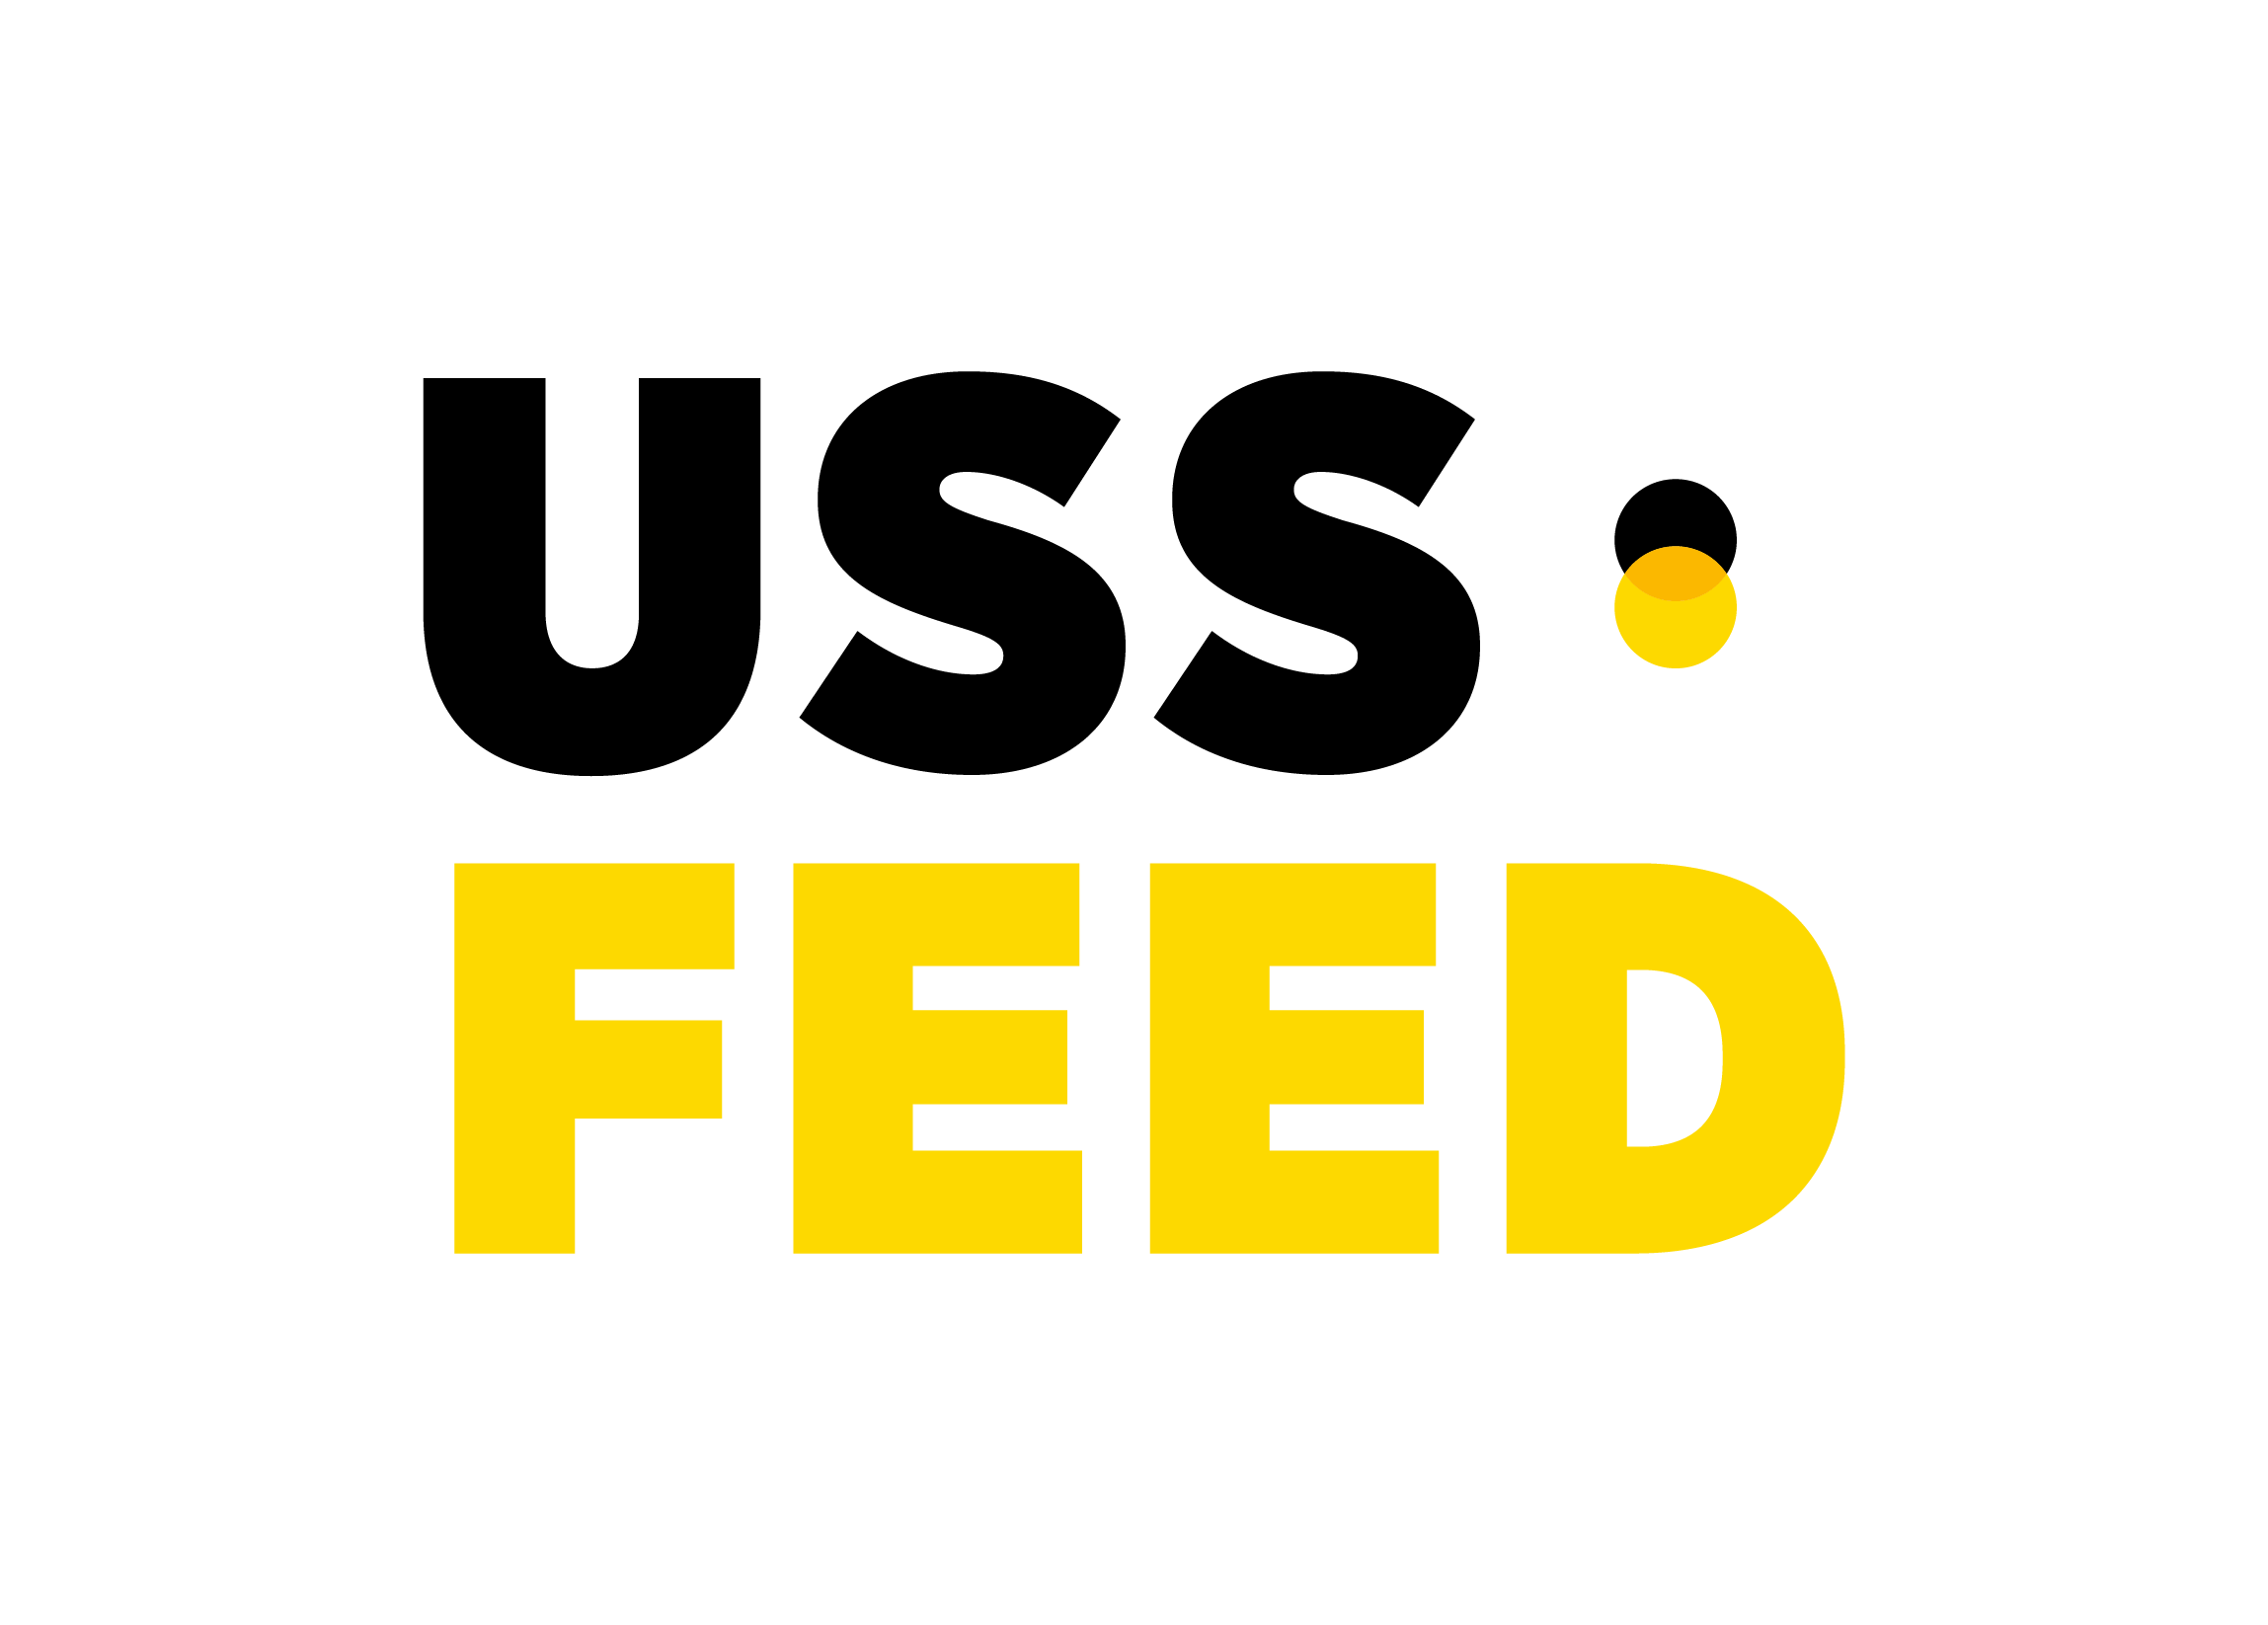 USS Feed